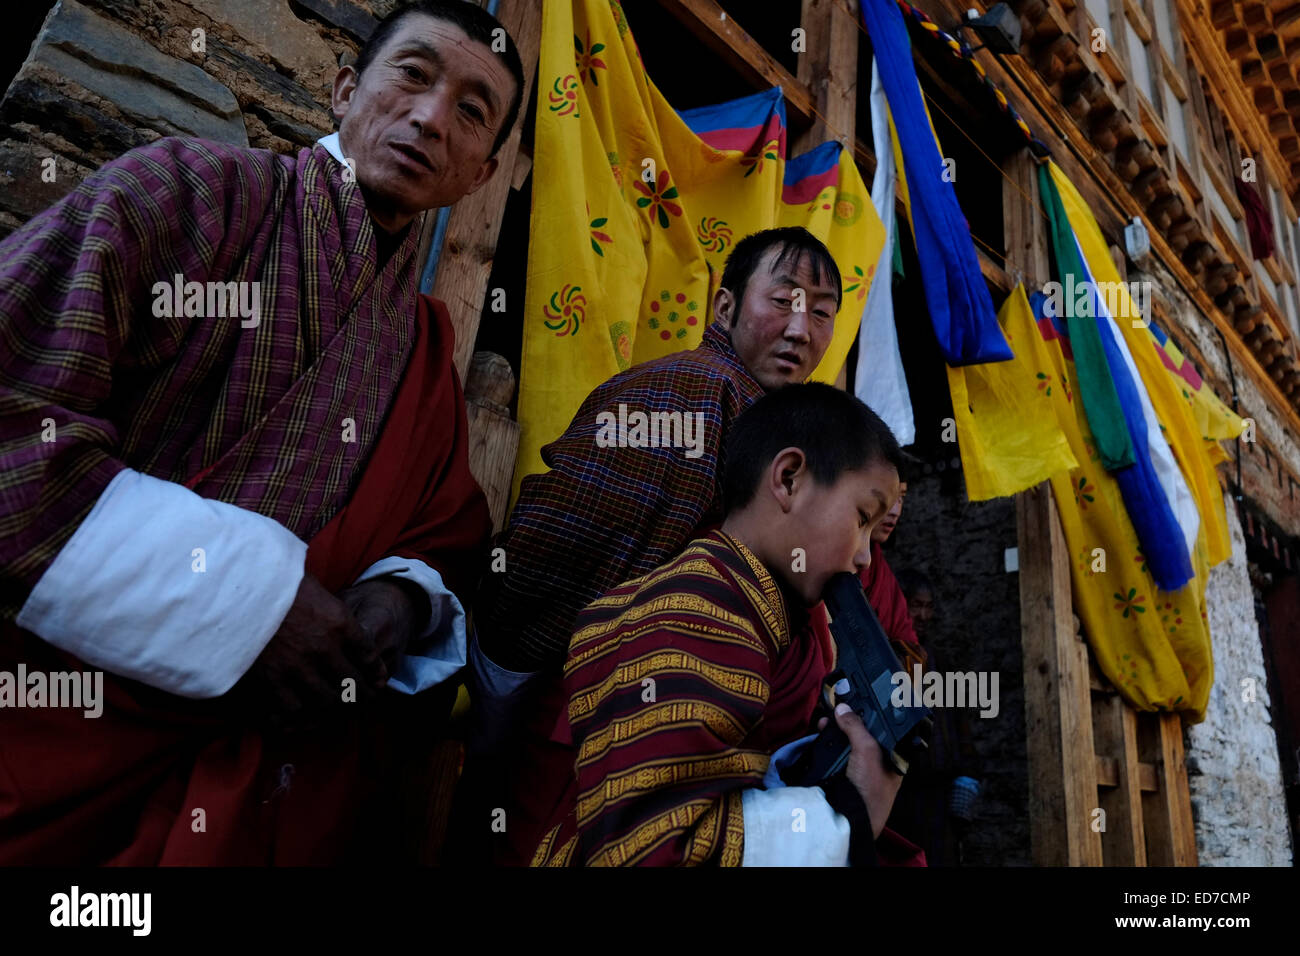 Les sections locales dans le village de Ngang Lhakhang au cours de l'Assemblée Tshechu festival dans la vallée de Tang au Bhoutan Banque D'Images